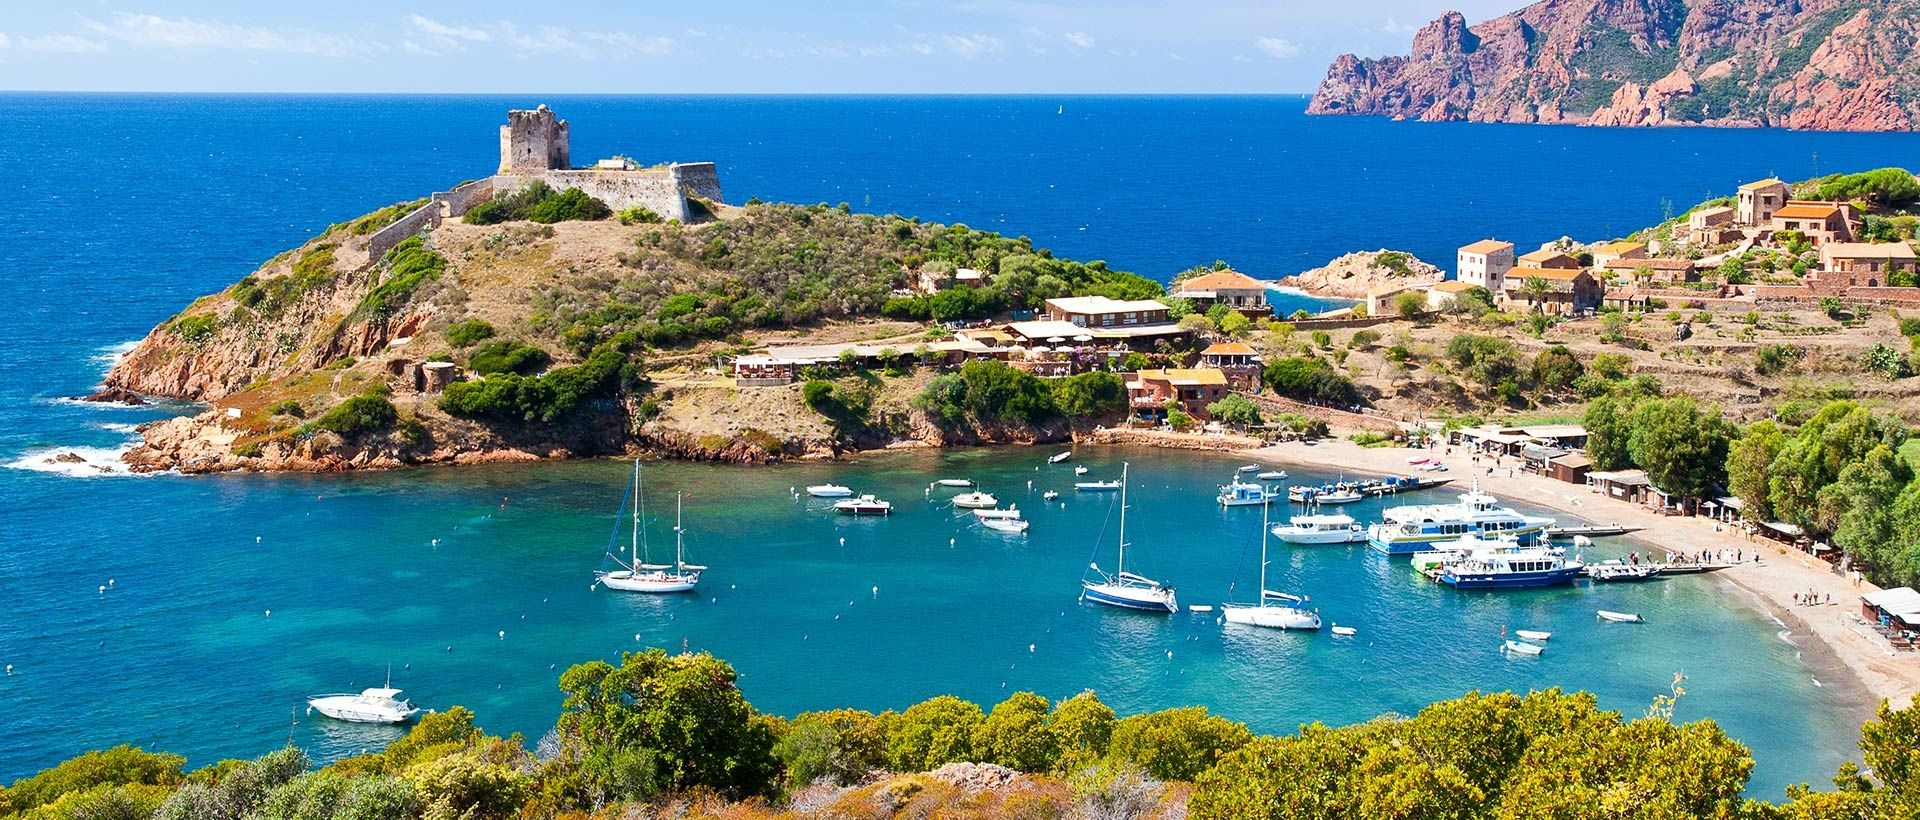 Vakantie op Corsica: Wat valt er te beleven? Wat moet u zeker bezoeken?